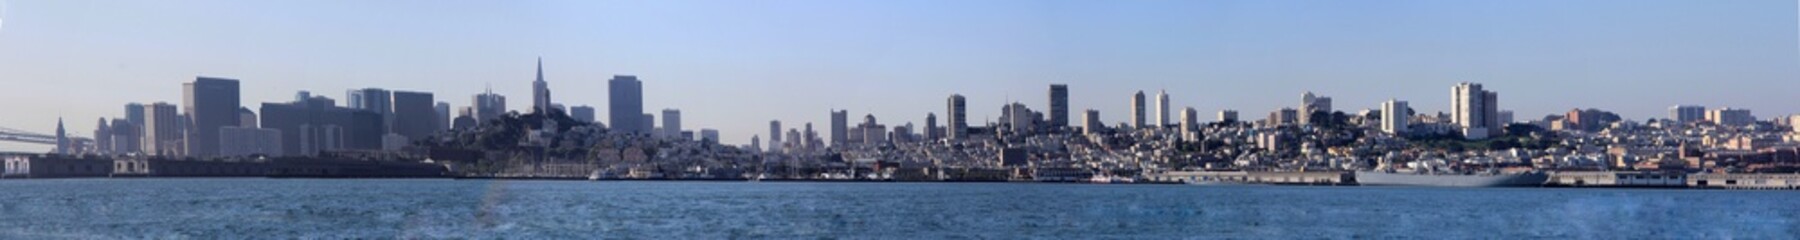 Fototapeta premium panorama of San Francisco and Bay Bridge taken from Treasure Island